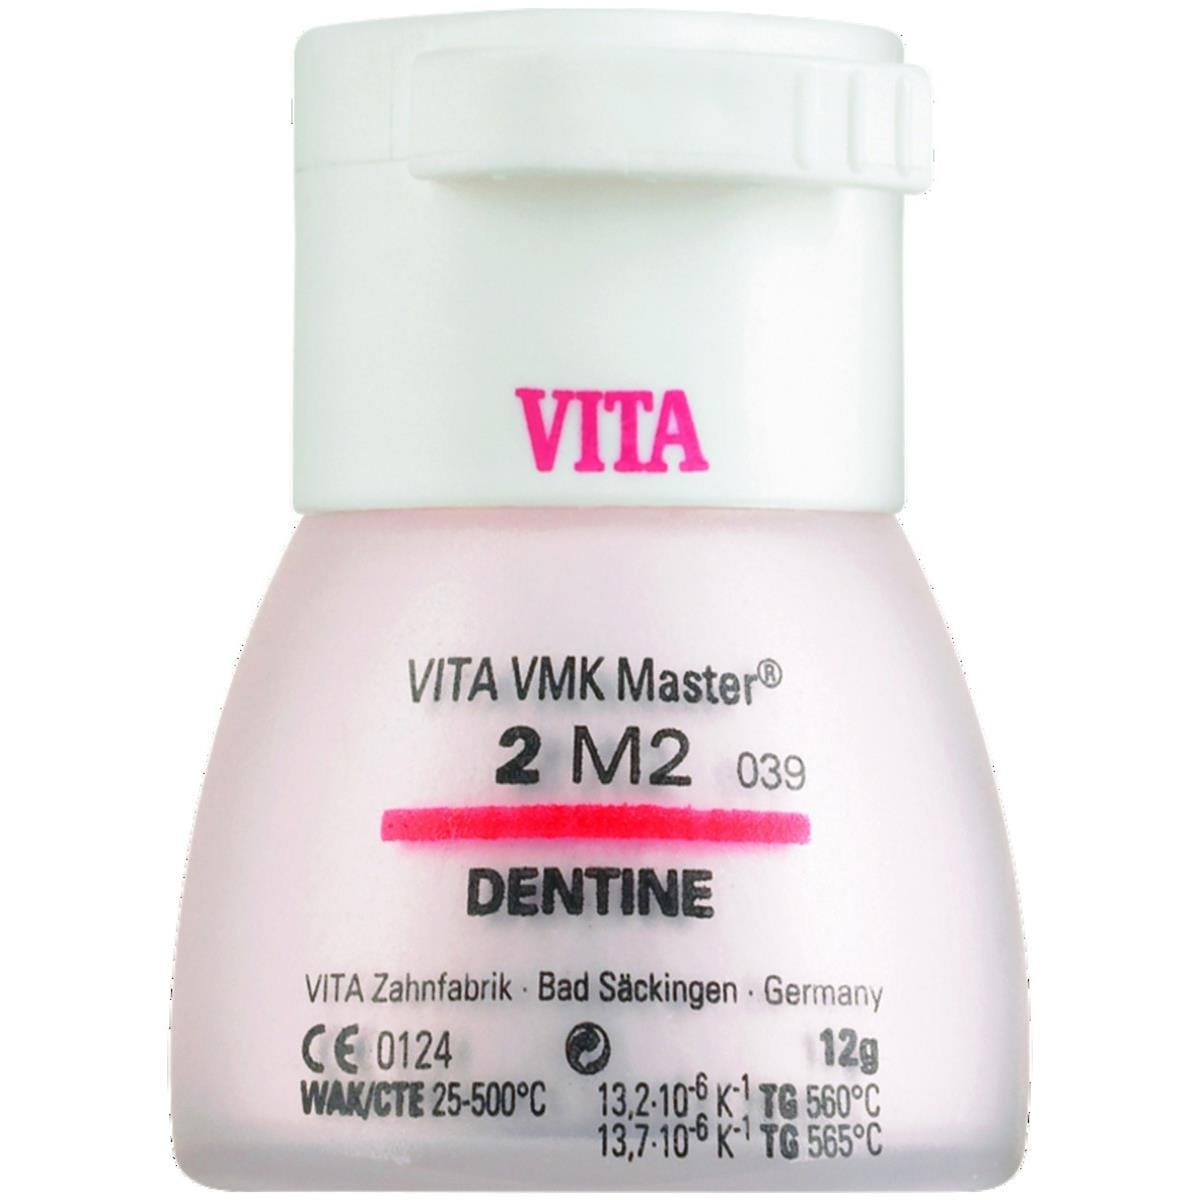 VMK Master VITA - Dentine - 3M2 - Le flacon de 12 g